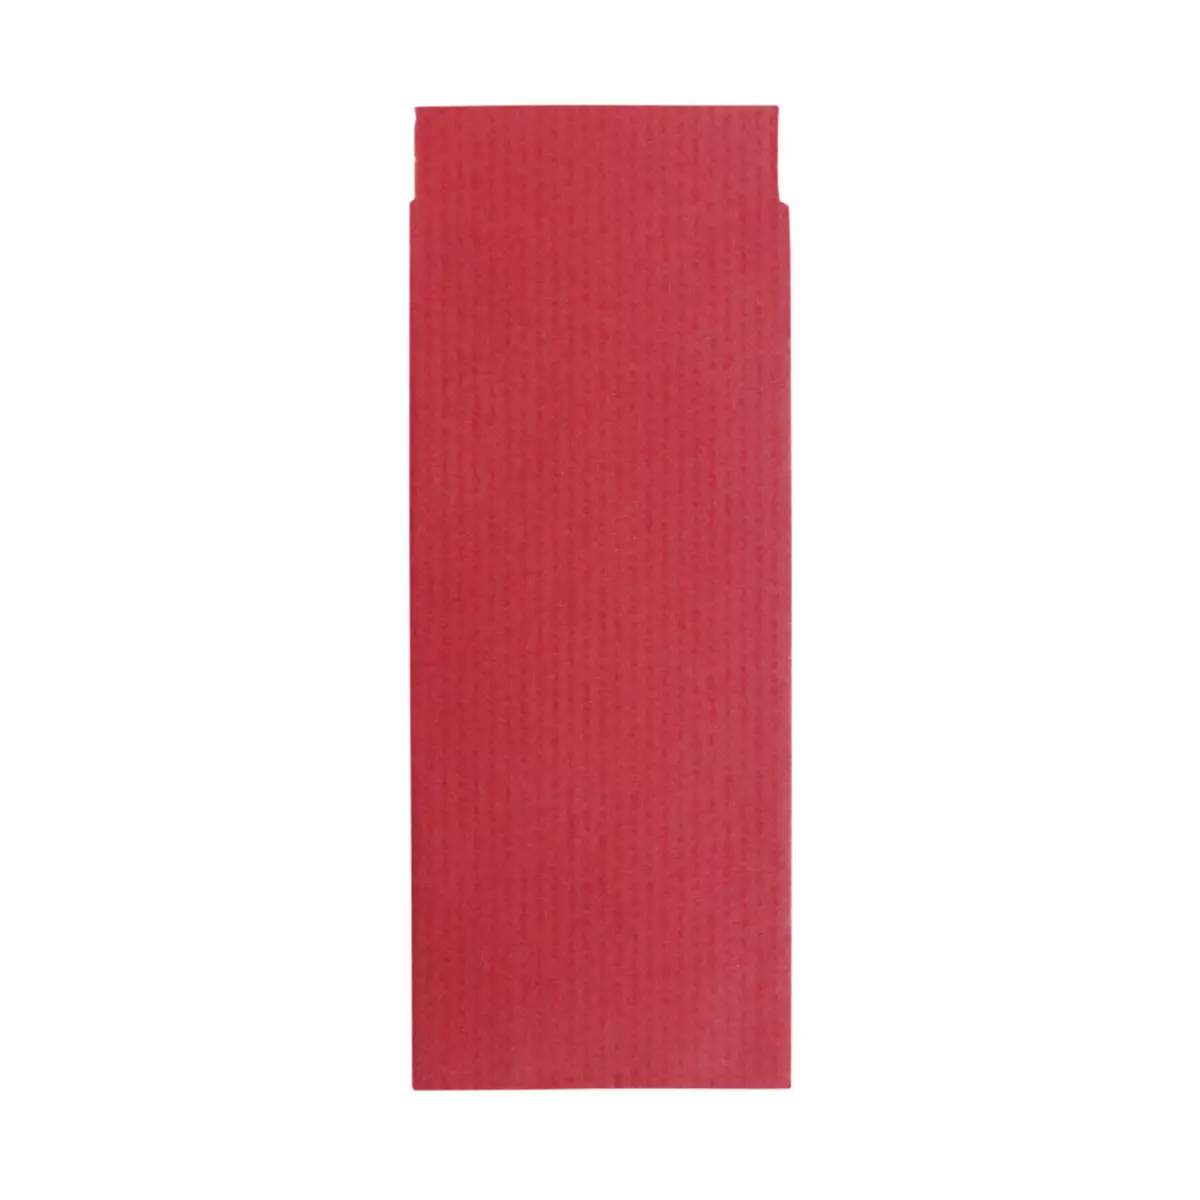 Rayher Mini - sac en papier, bordeaux, 5,3x11,5cm, 50 pces